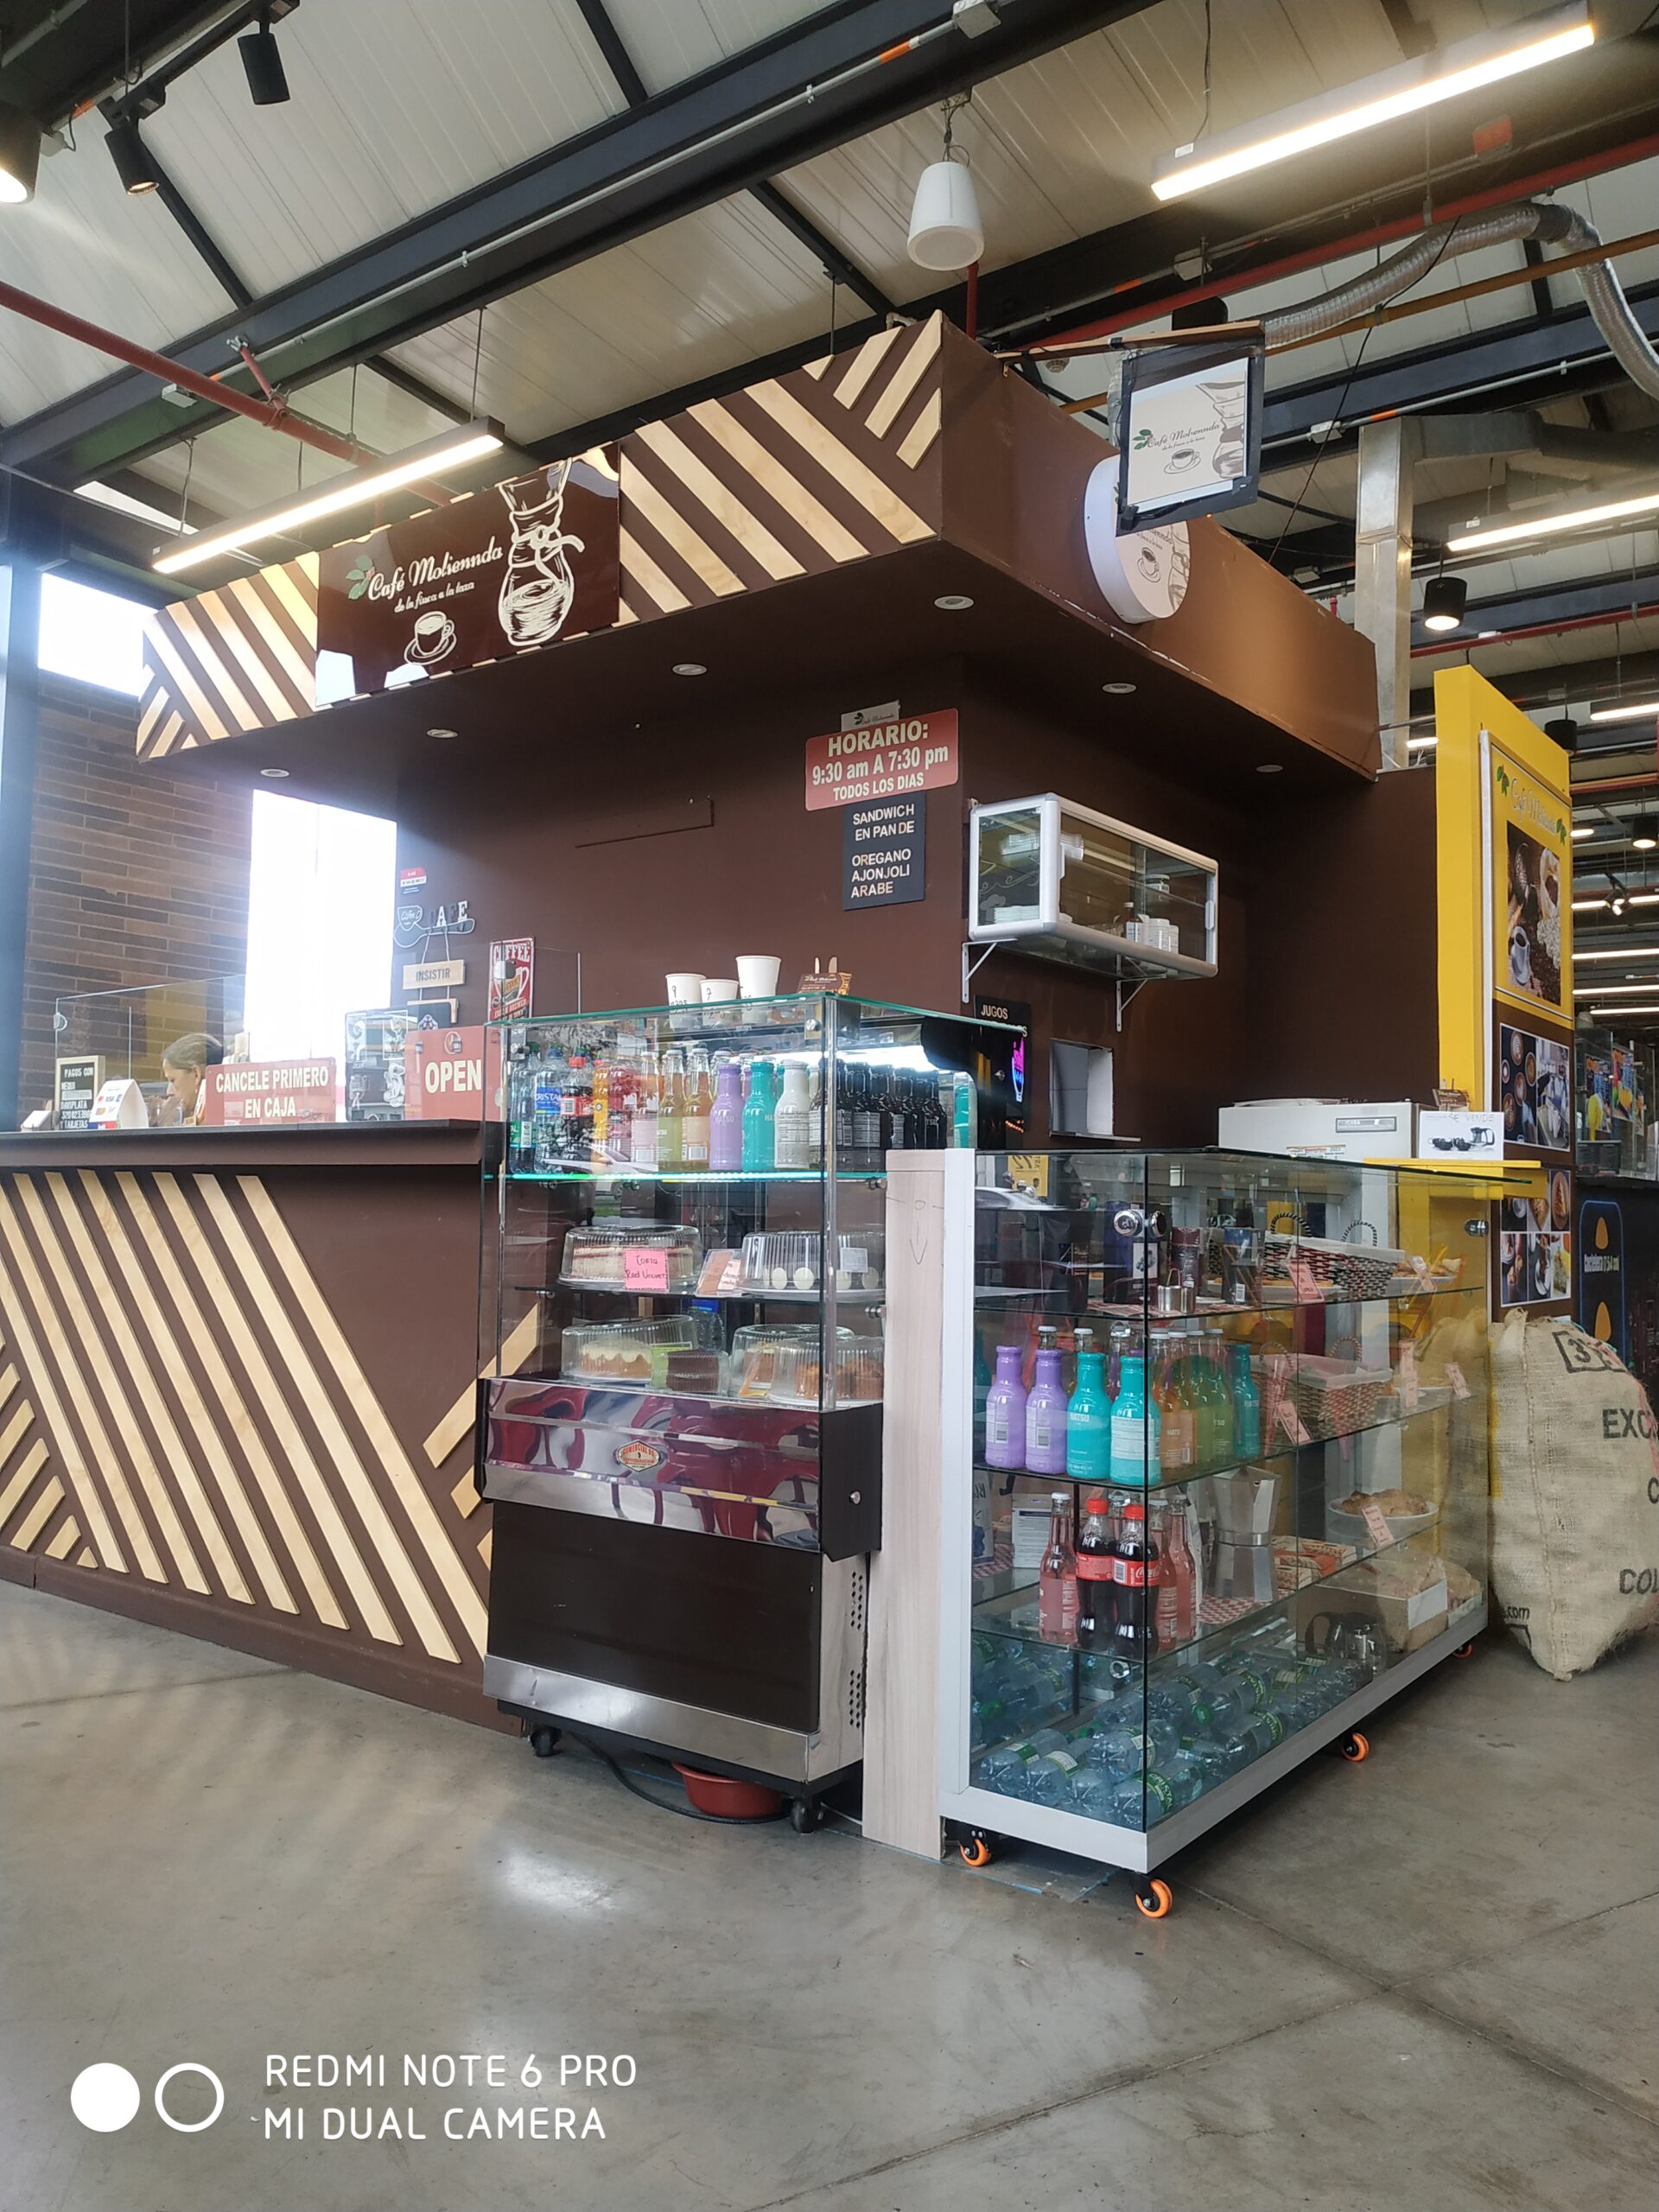 27 ideas de Mueble para cafetera  estaciones de café en casa, decoración  de unas, café bar en casa